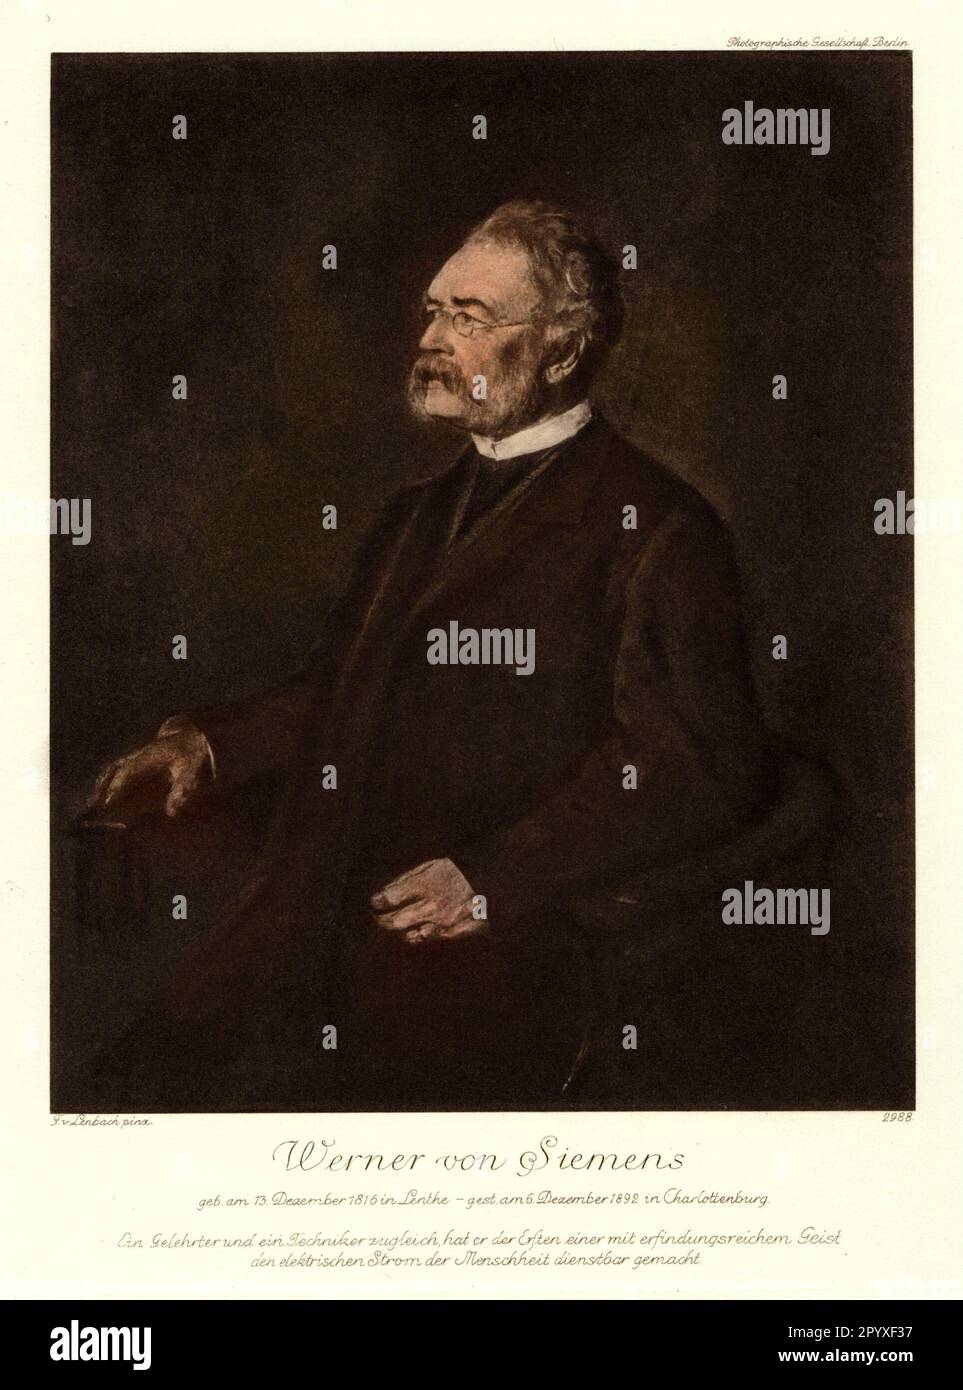 Werner von (desde 1888) Siemens (1816-1892), ingeniero y empresario alemán, cofundador de ingeniería eléctrica. Pintura de Franz von Lenbach. Foto: Heliogravure, Corpus Imaginum, Colección Hanfstaengl. [traducción automatizada] Foto de stock